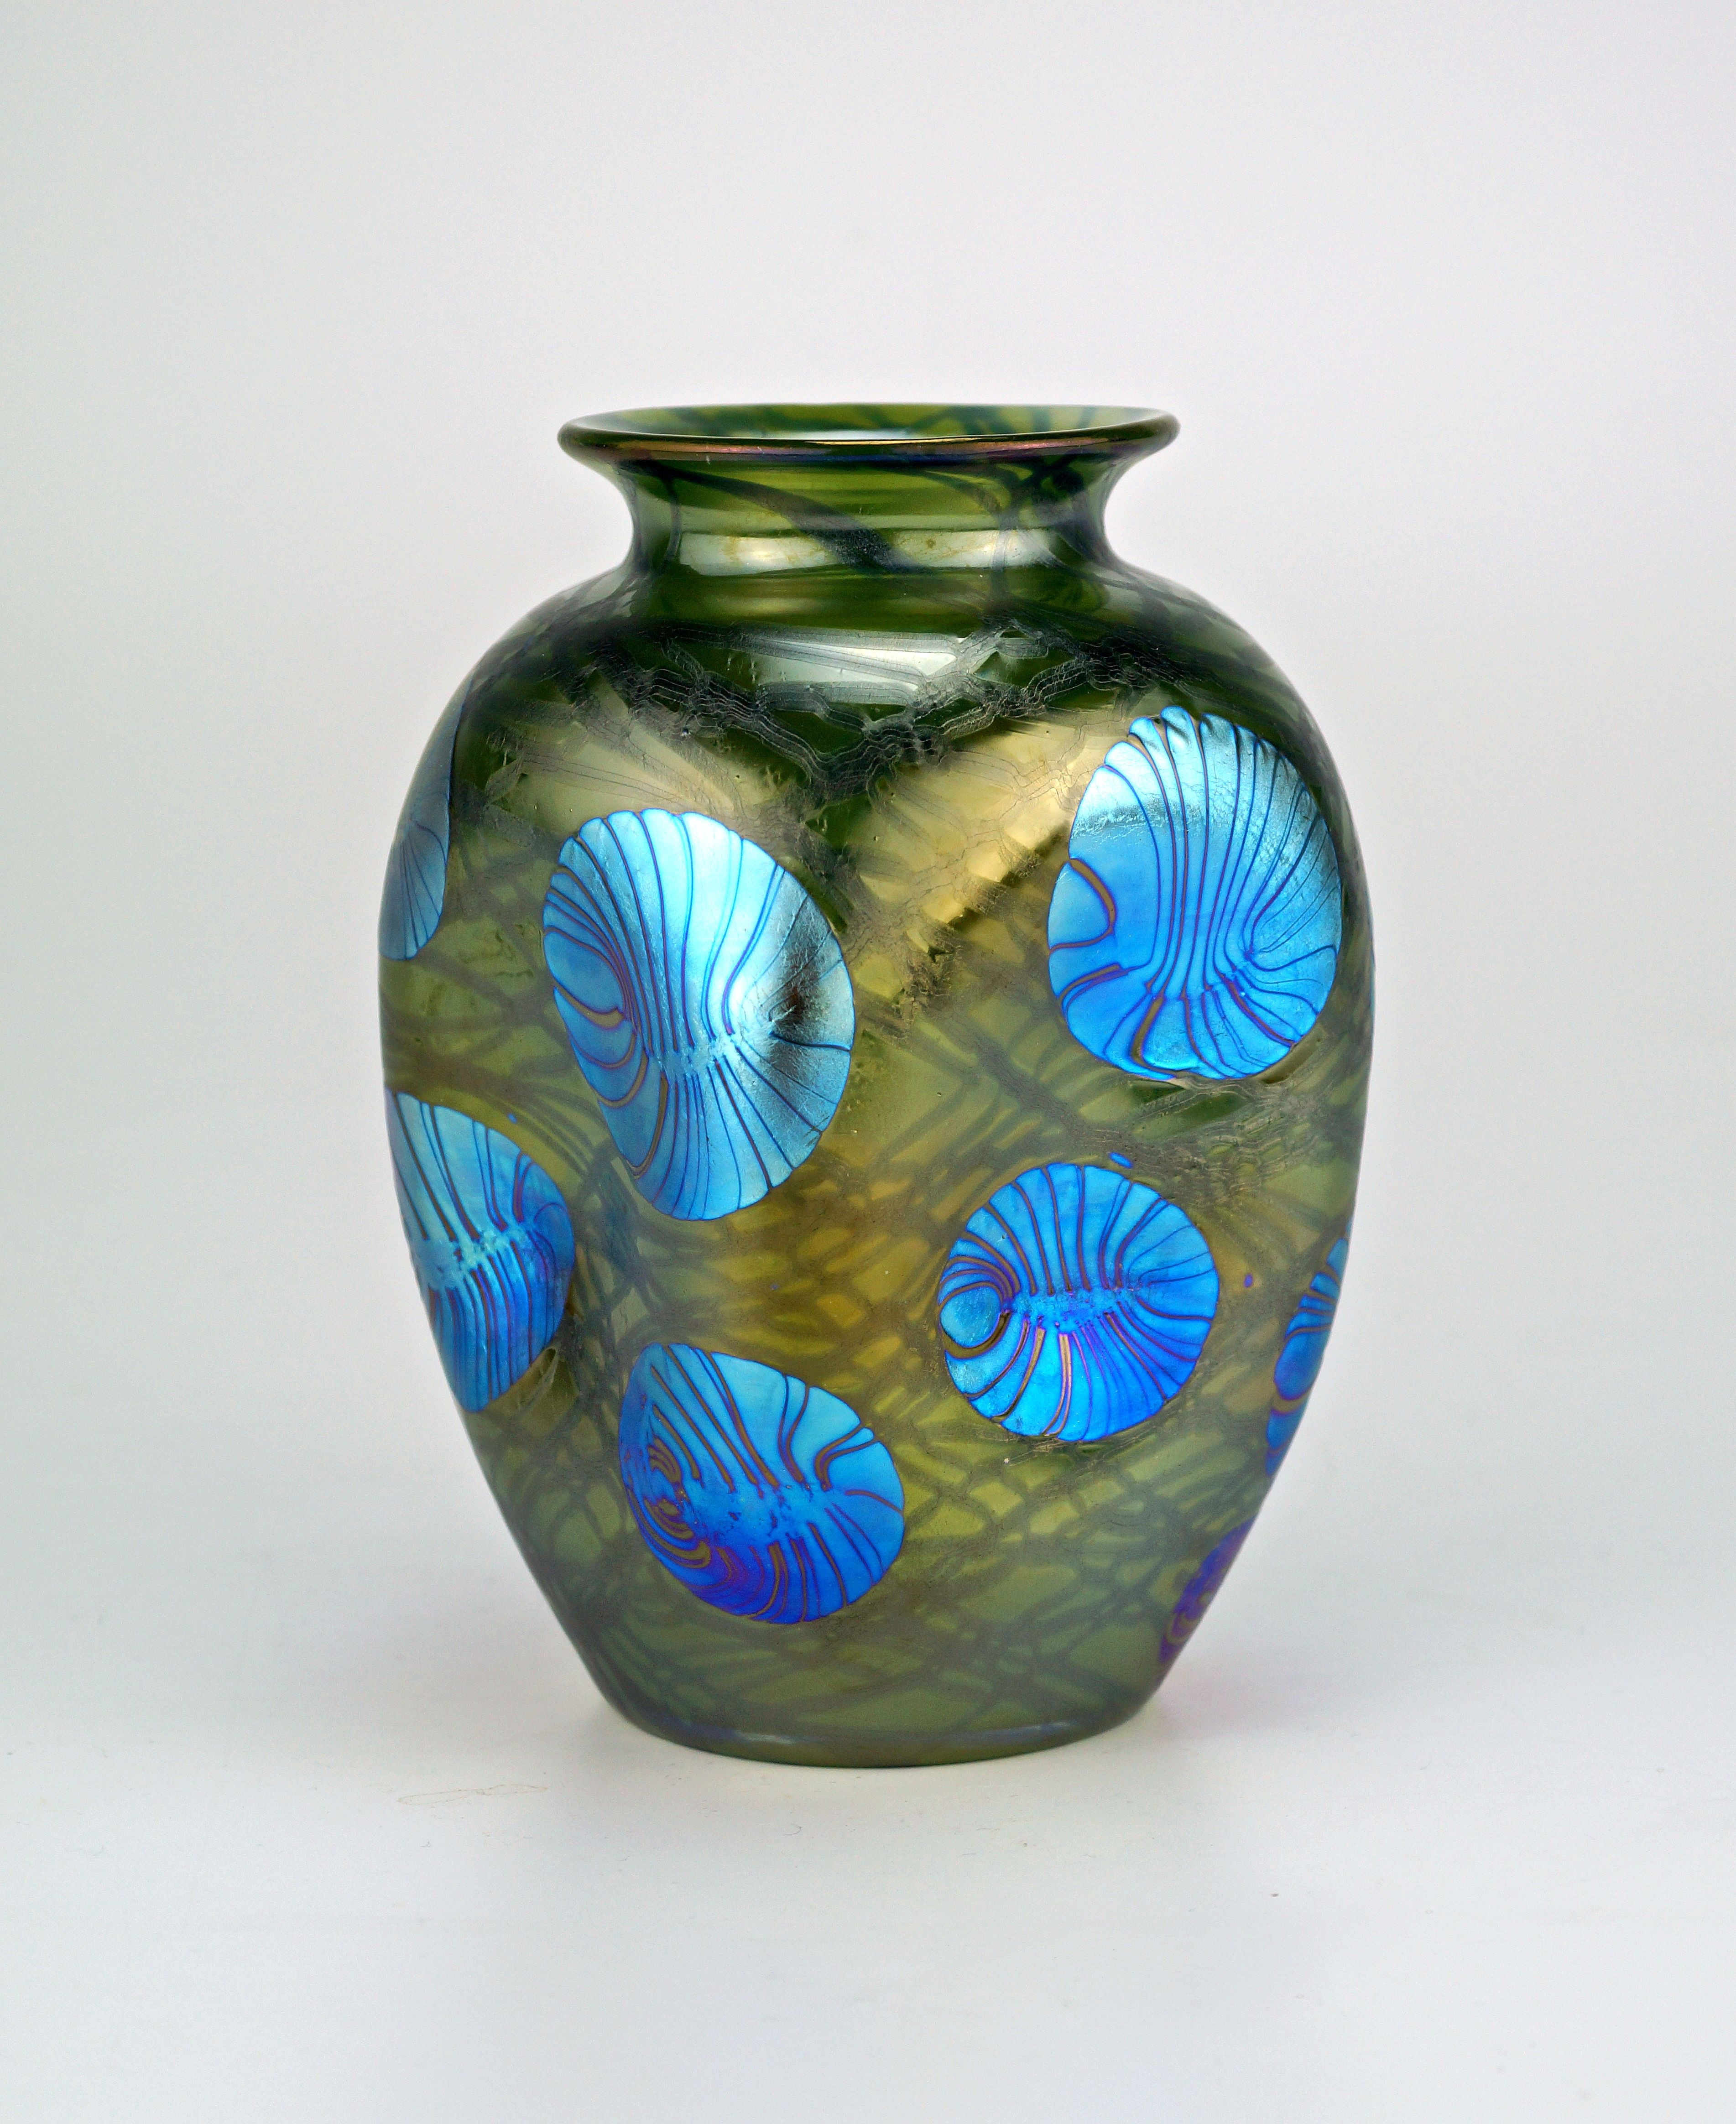 bohemian glass vase of loetz pha¤nomen genre 1 215 signed loetz art glass pinterest within glass art